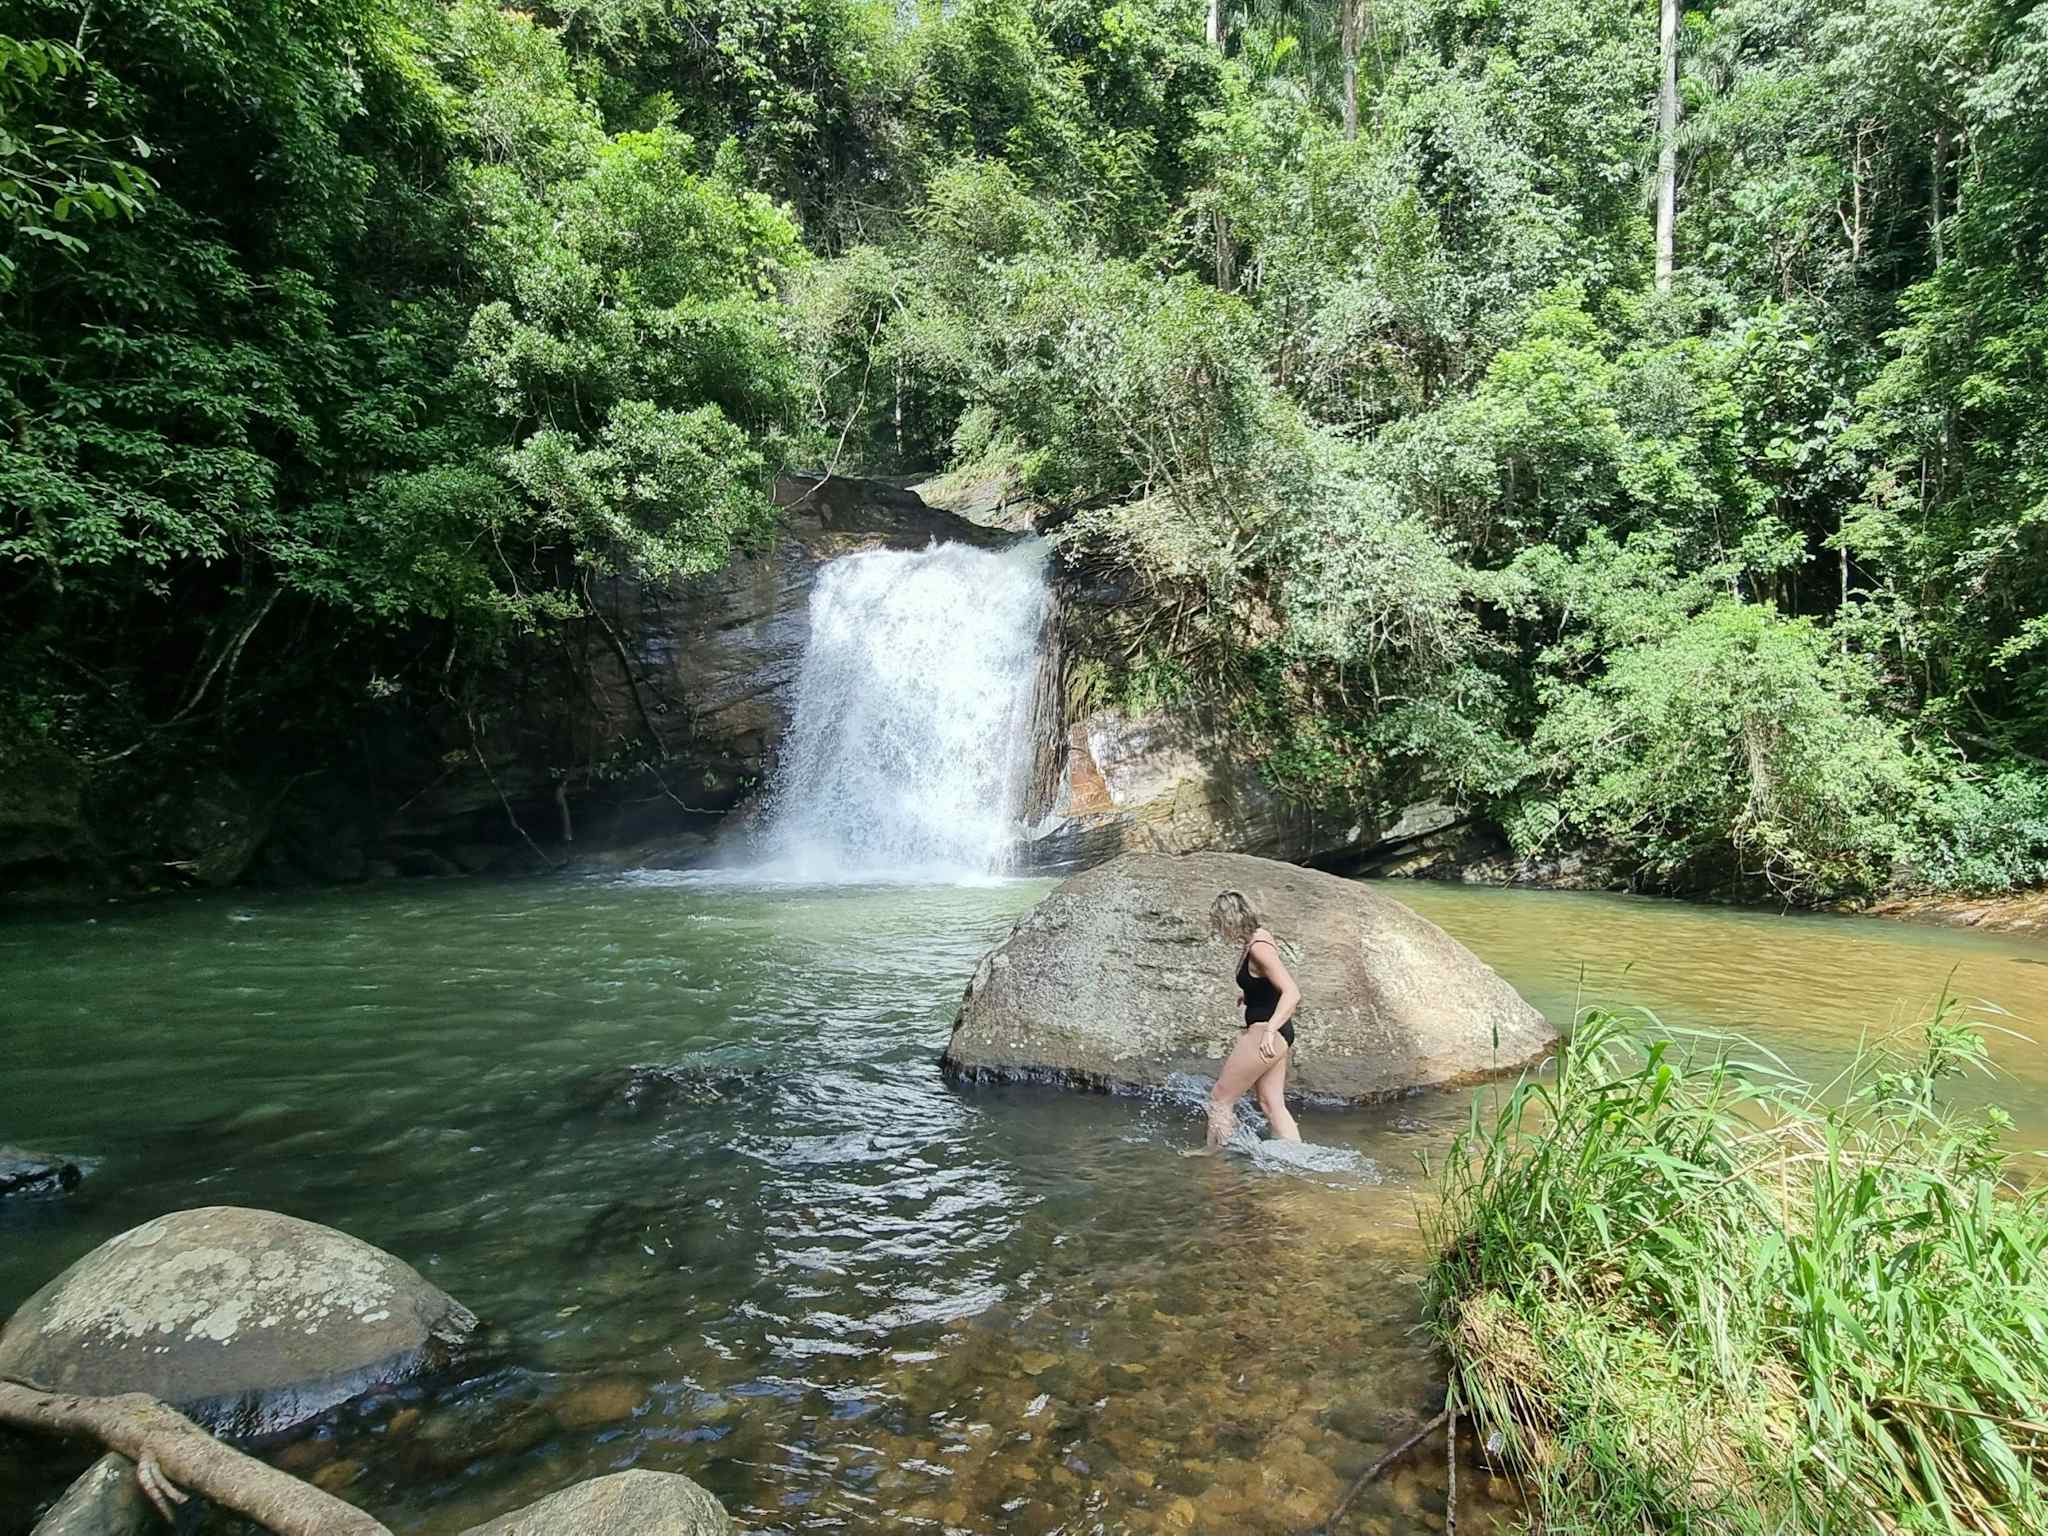 Woman swimming in a waterfall, Sri Lanka.